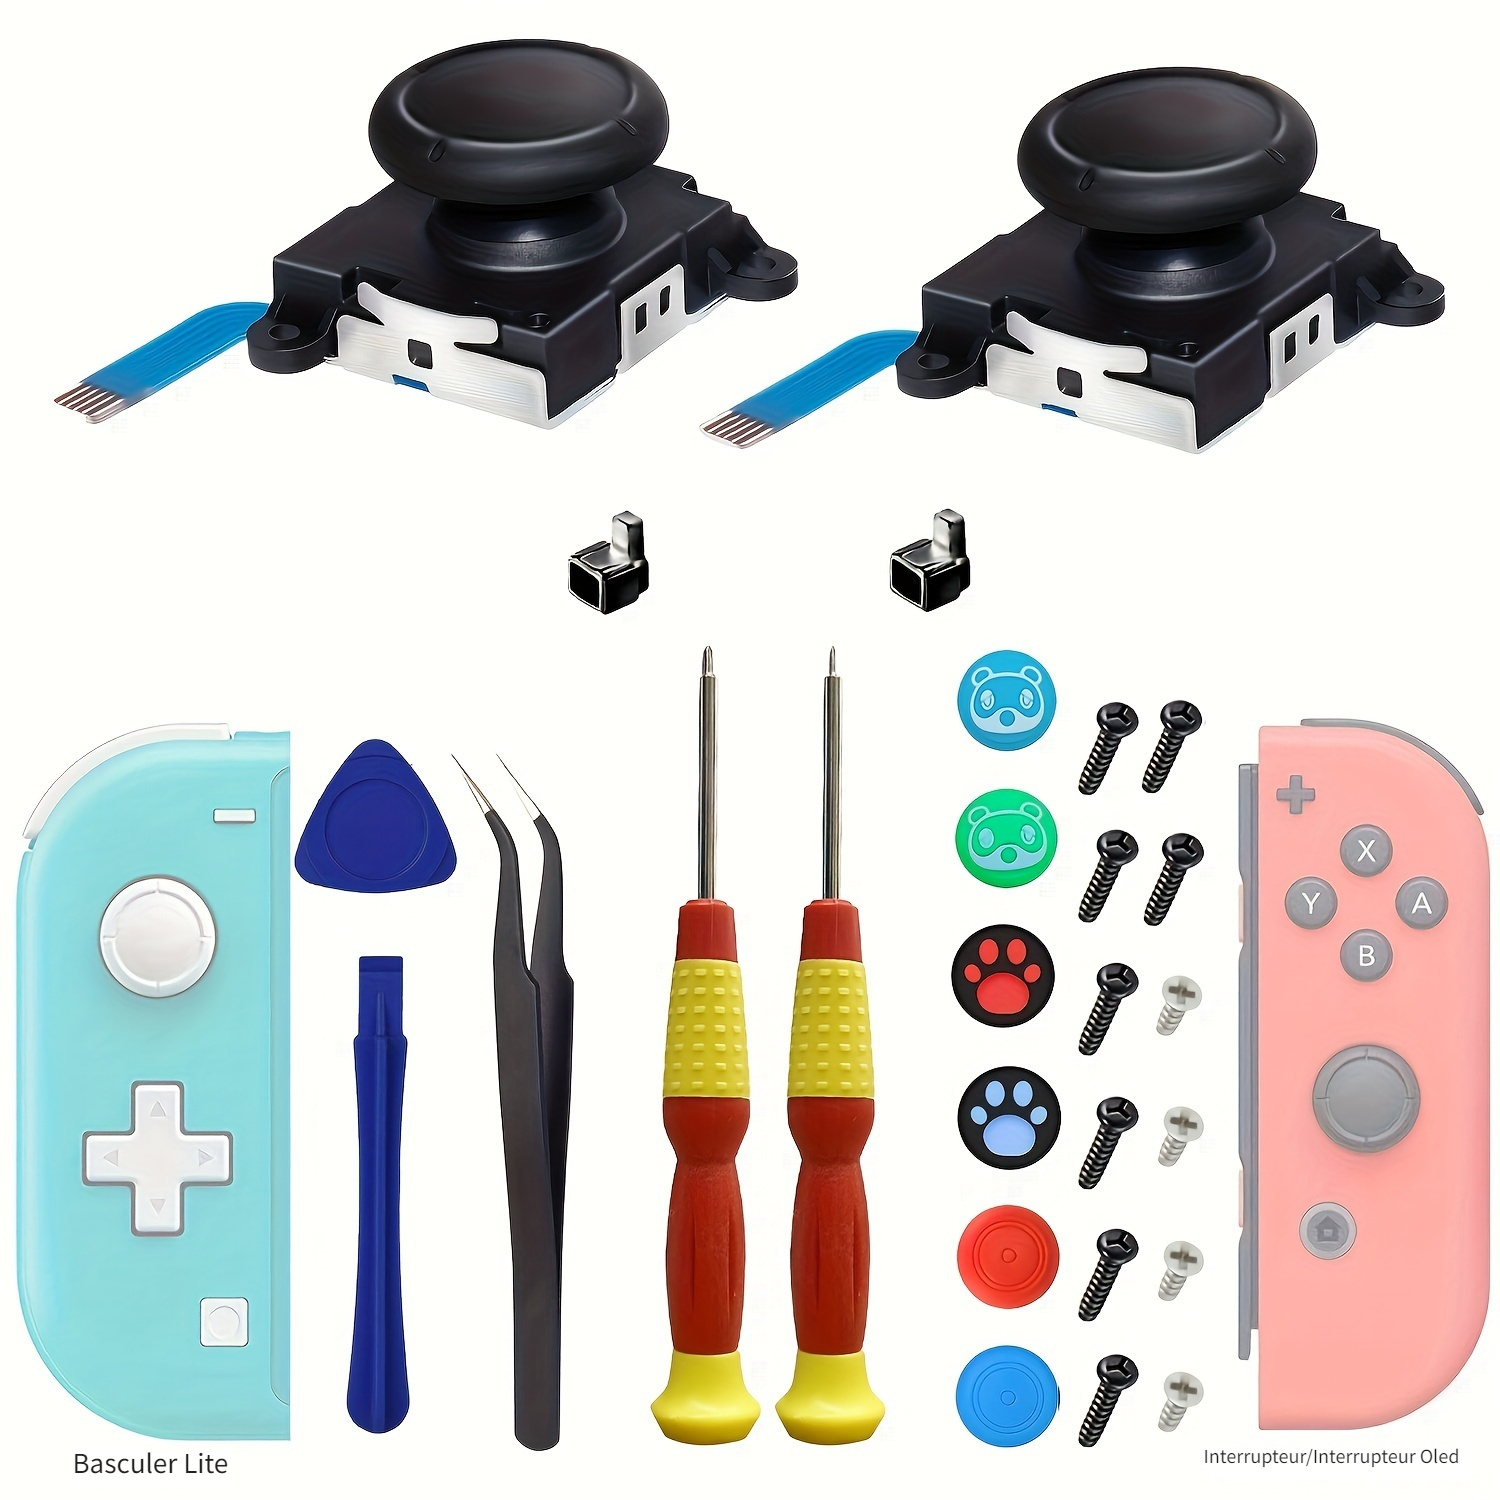 Kits d'outils, outils de réparation Nintendo Switch, kits de